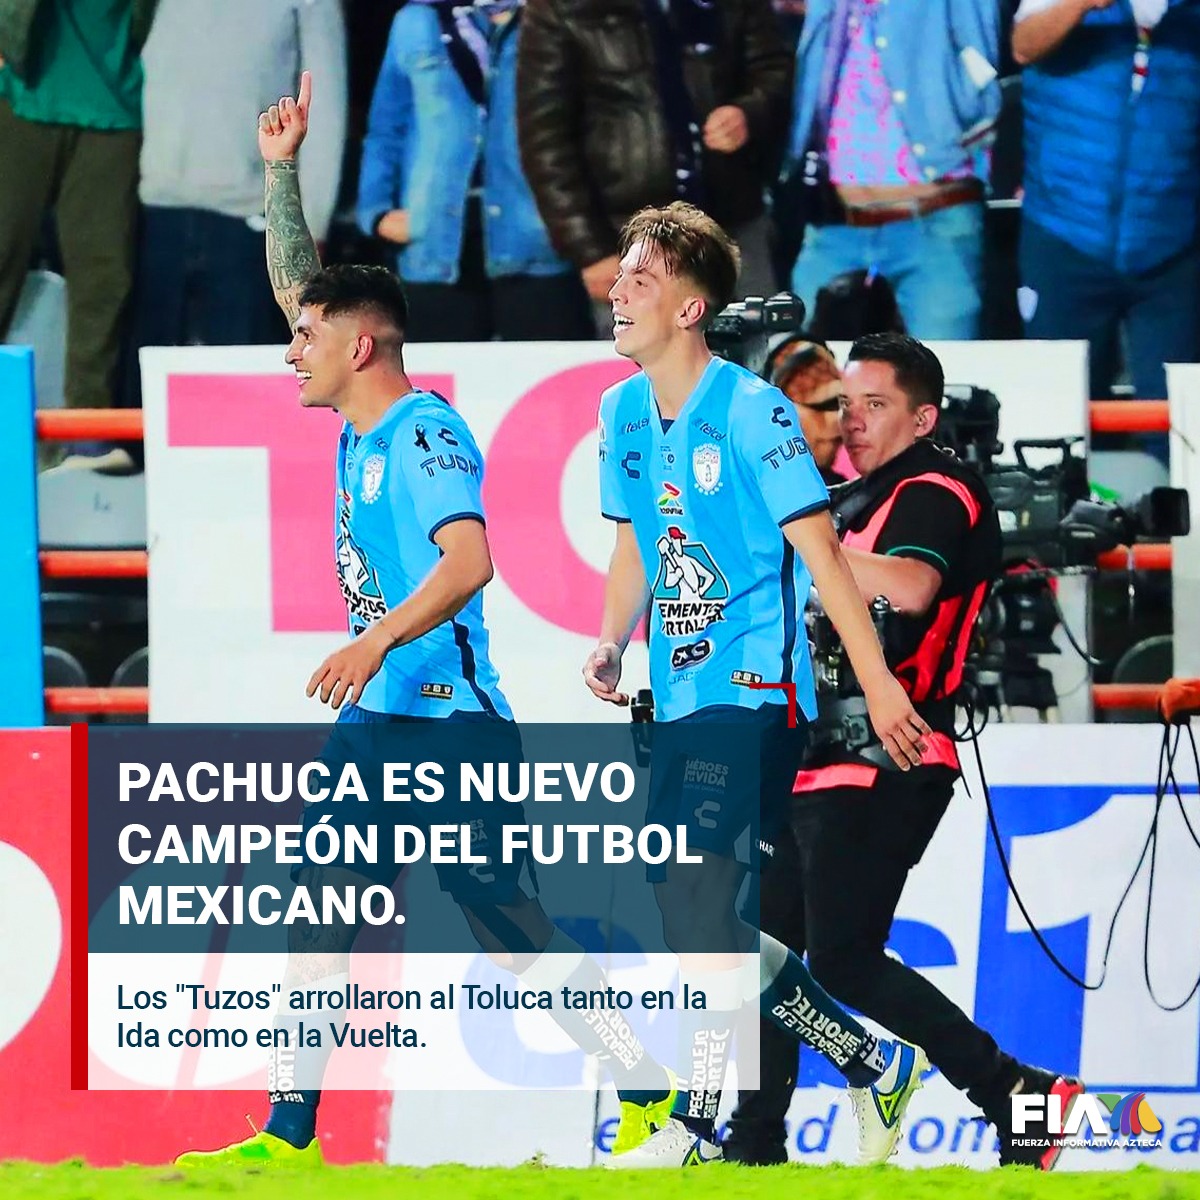 🏆⚽¡Pachuca, nuevo campeón del futbol mexicano! Los #Tuzos ARROLLARON al @TolucaFC tanto en la Ida como en la Vuelta de la Final del #Apertura2022 de la @LigaBBVAMX. Es el séptimo título de liga para los hidalguenses.